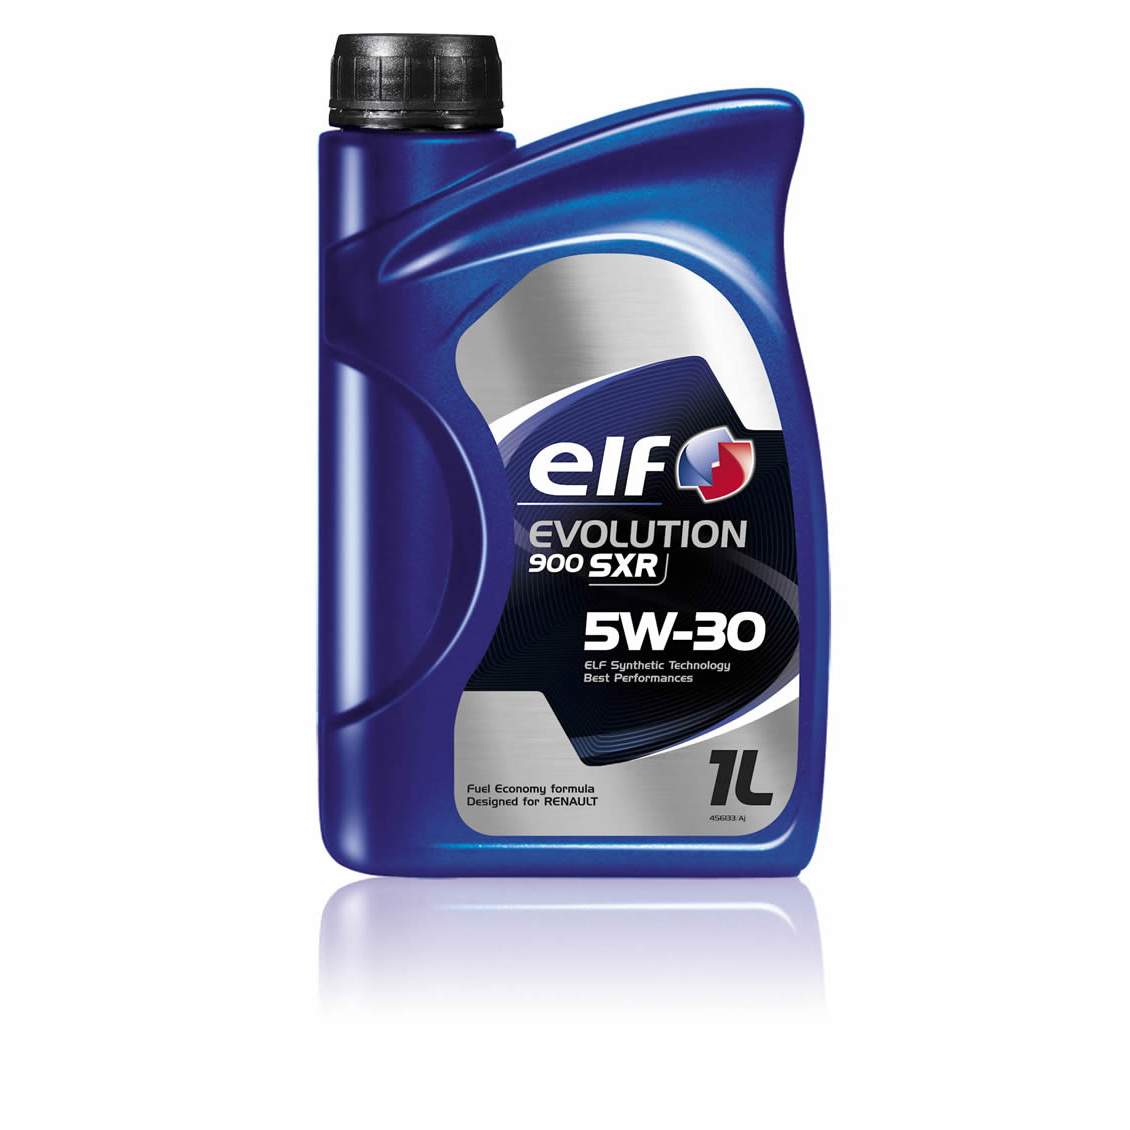 Отзывы о масле ELF Evolution 900 SXR 5W-30